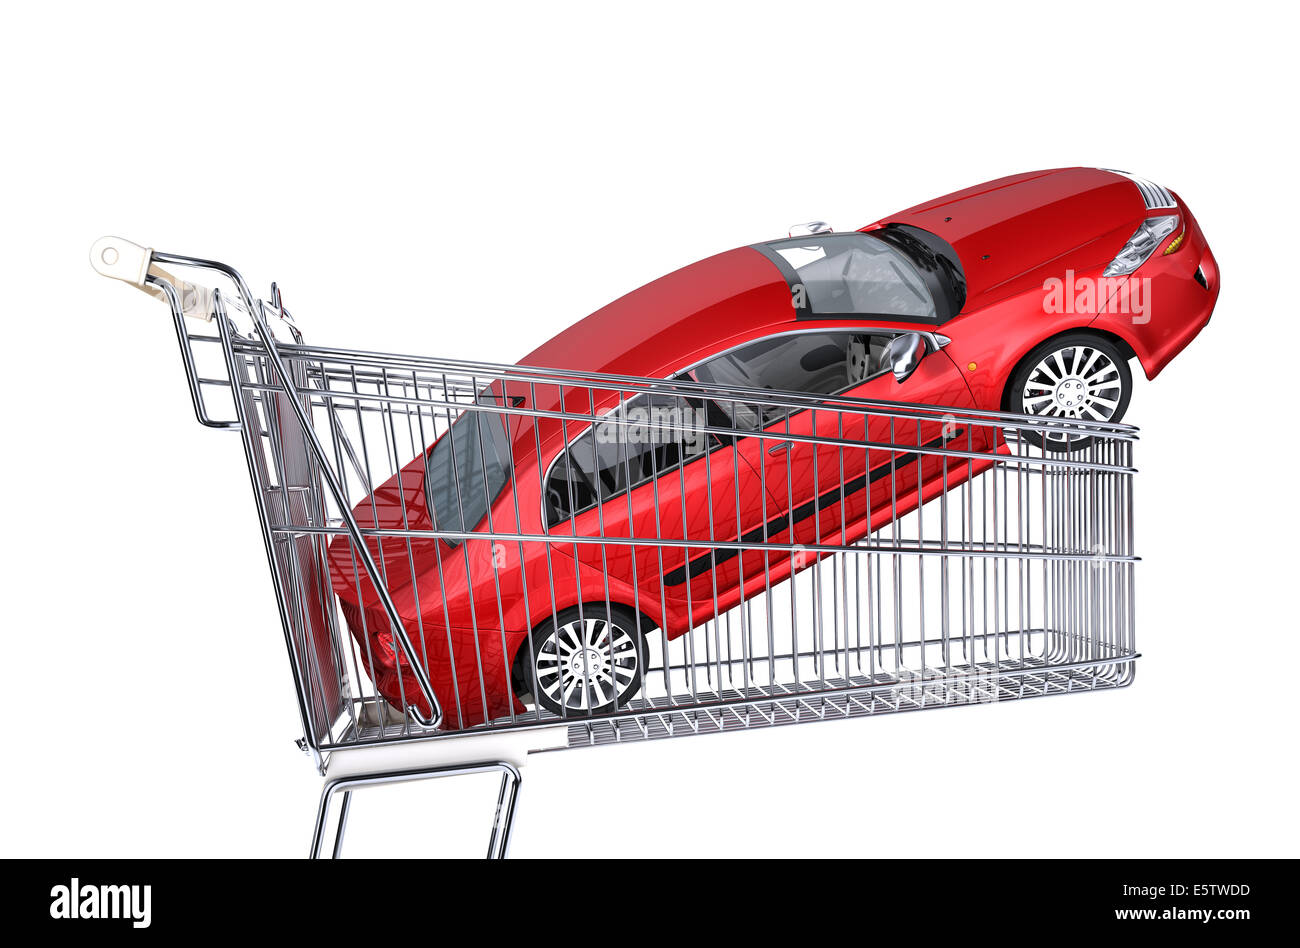 El carro del supermercado con coche sedán rojo dentro de él. Vista lateral, sobre un fondo blanco. Foto de stock